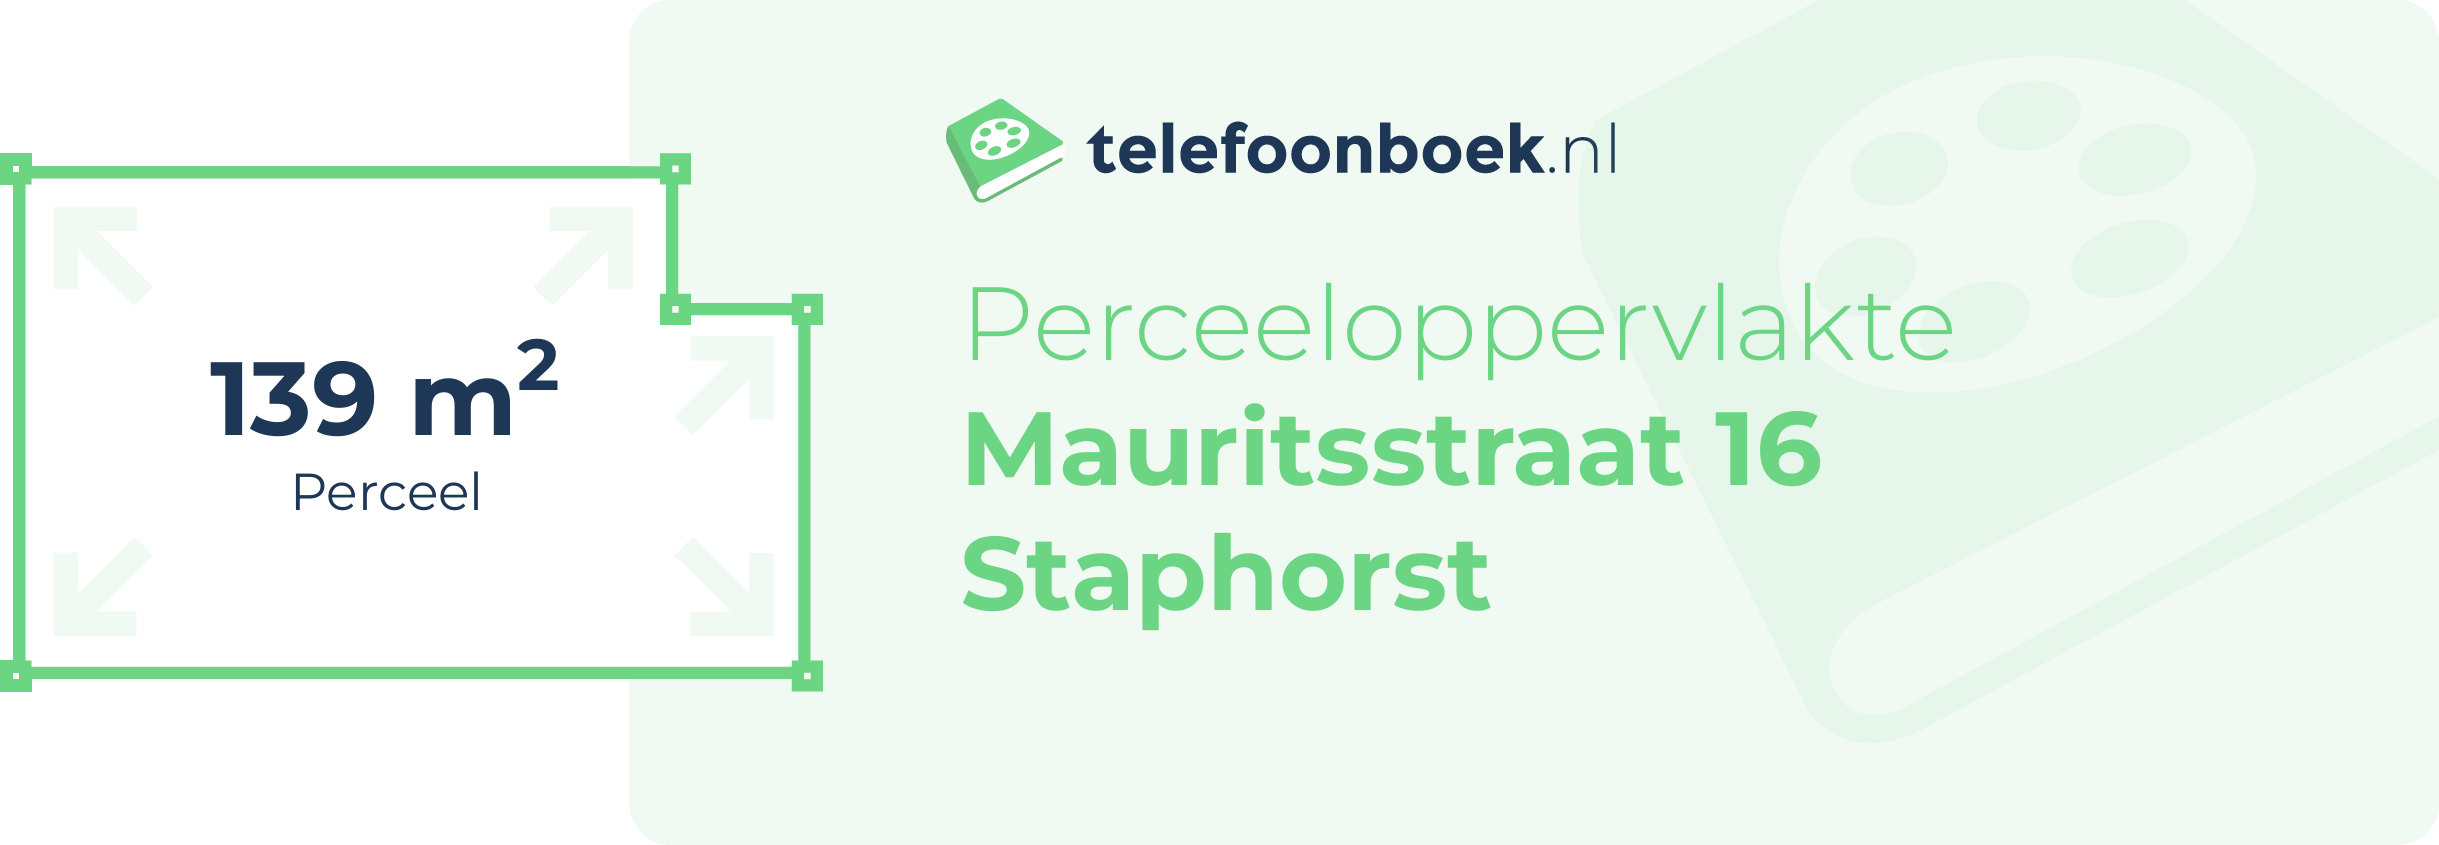 Perceeloppervlakte Mauritsstraat 16 Staphorst